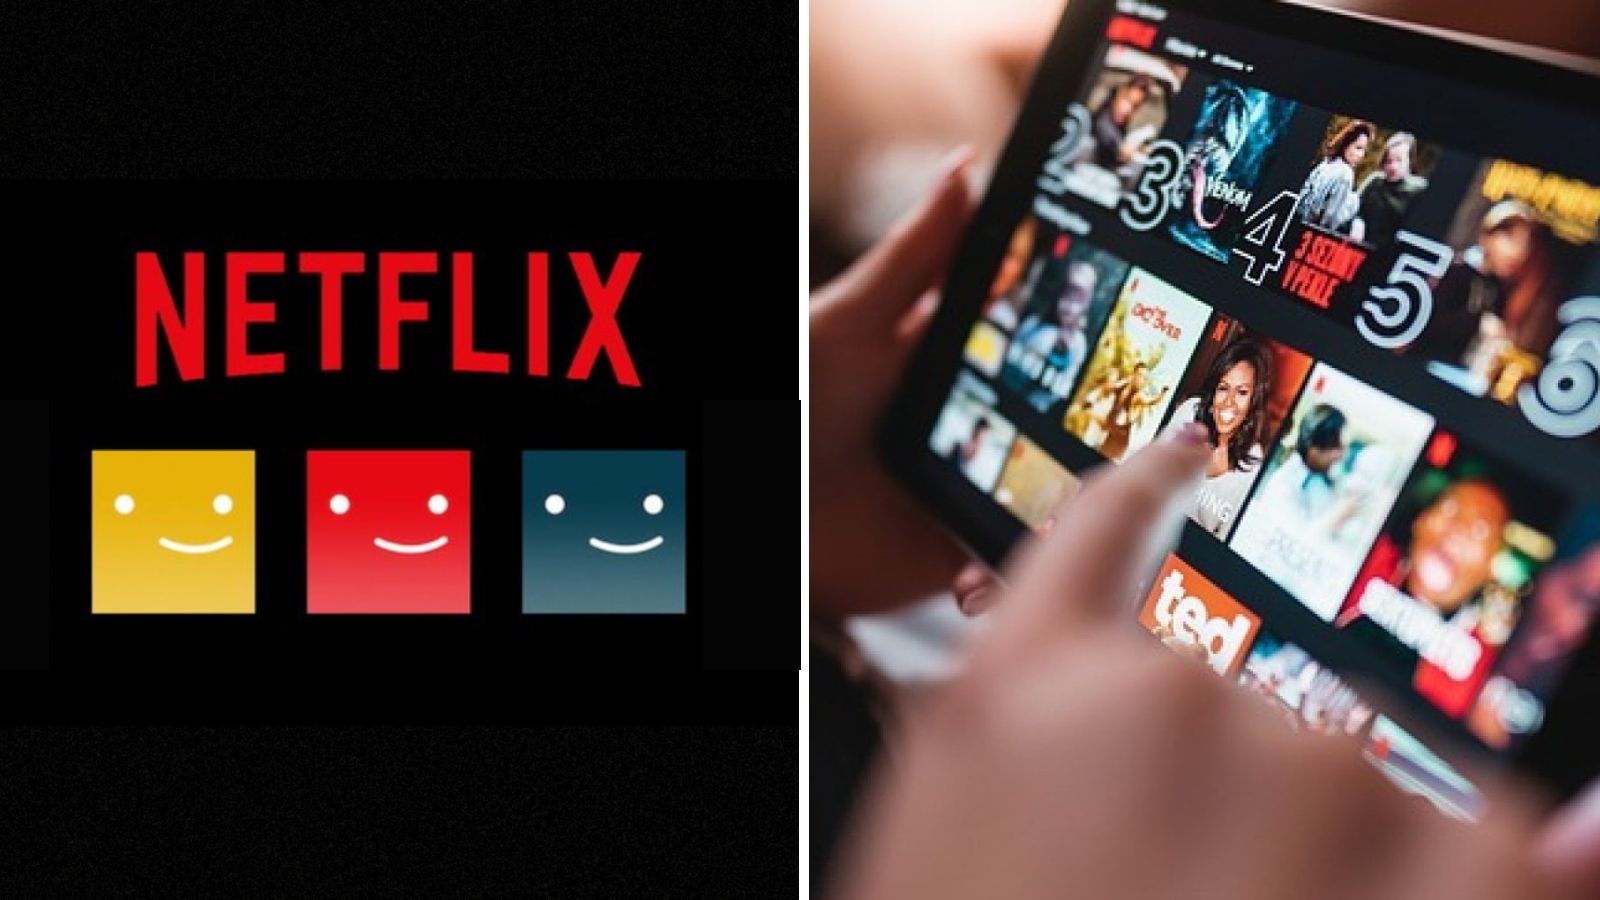 Netflix pospone plan de cuentas compartidas